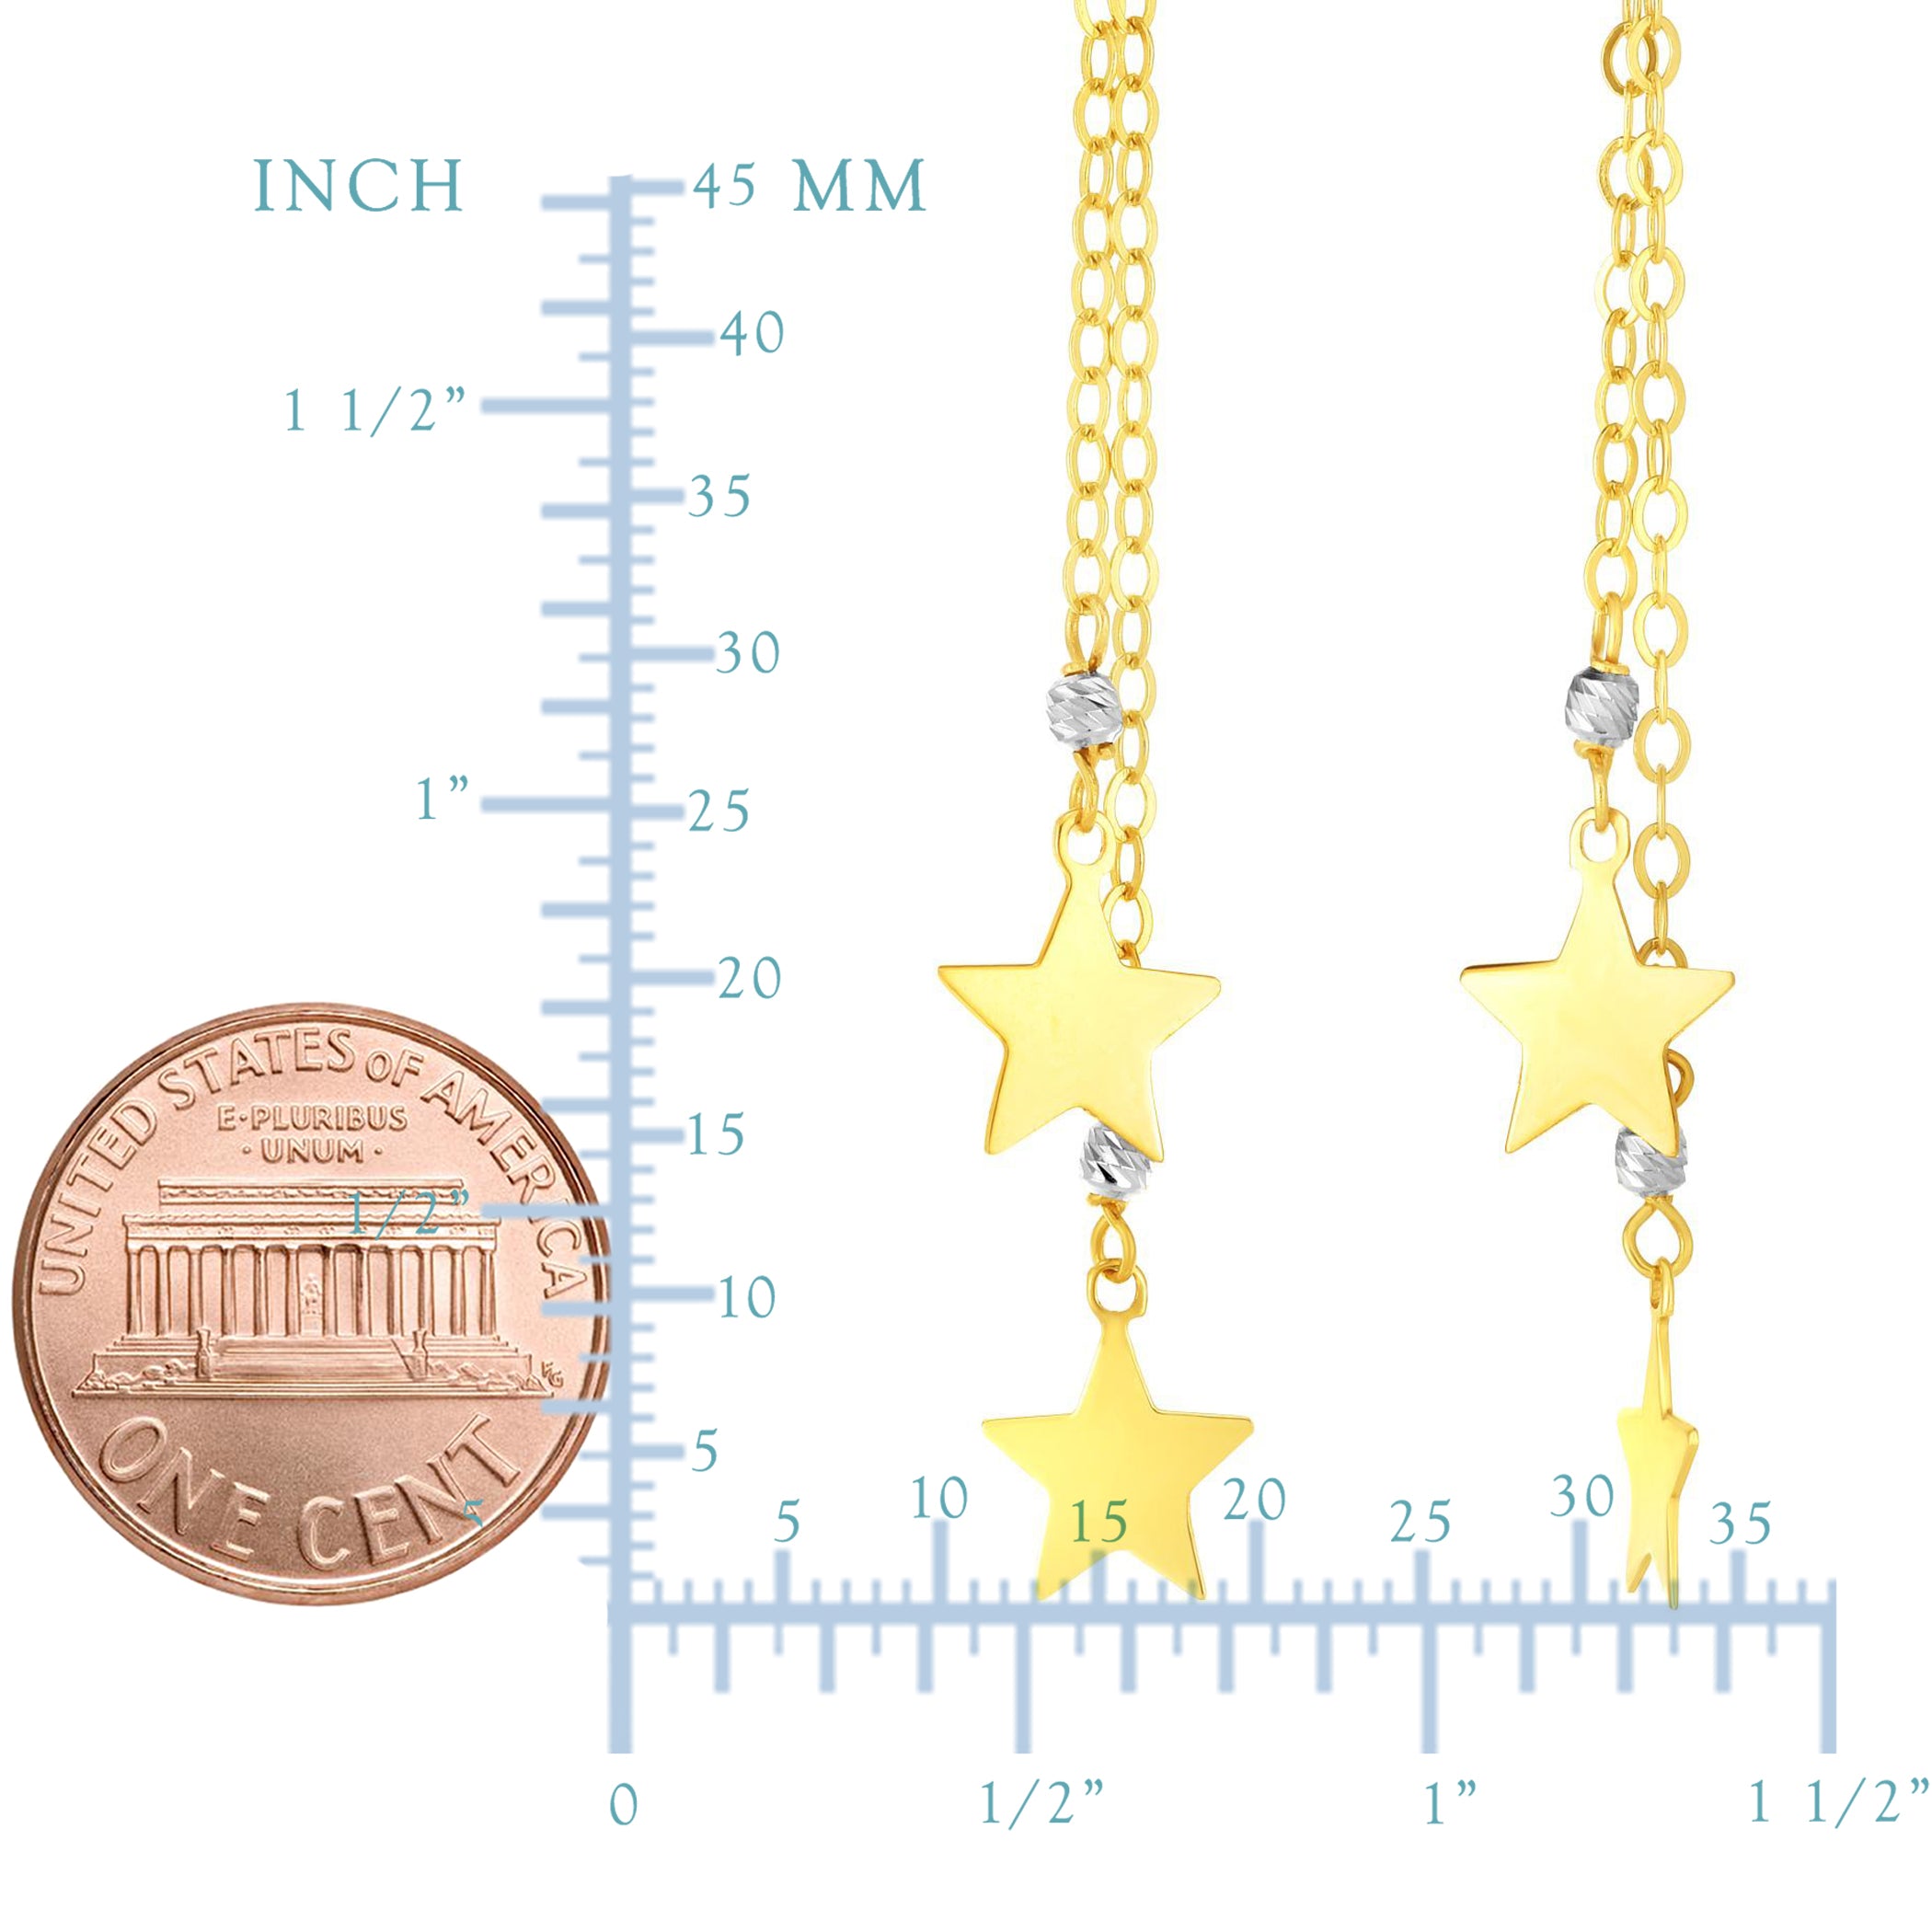 14K gult och vitt guld Hanging Stars Drop Earrings fina designersmycken för män och kvinnor